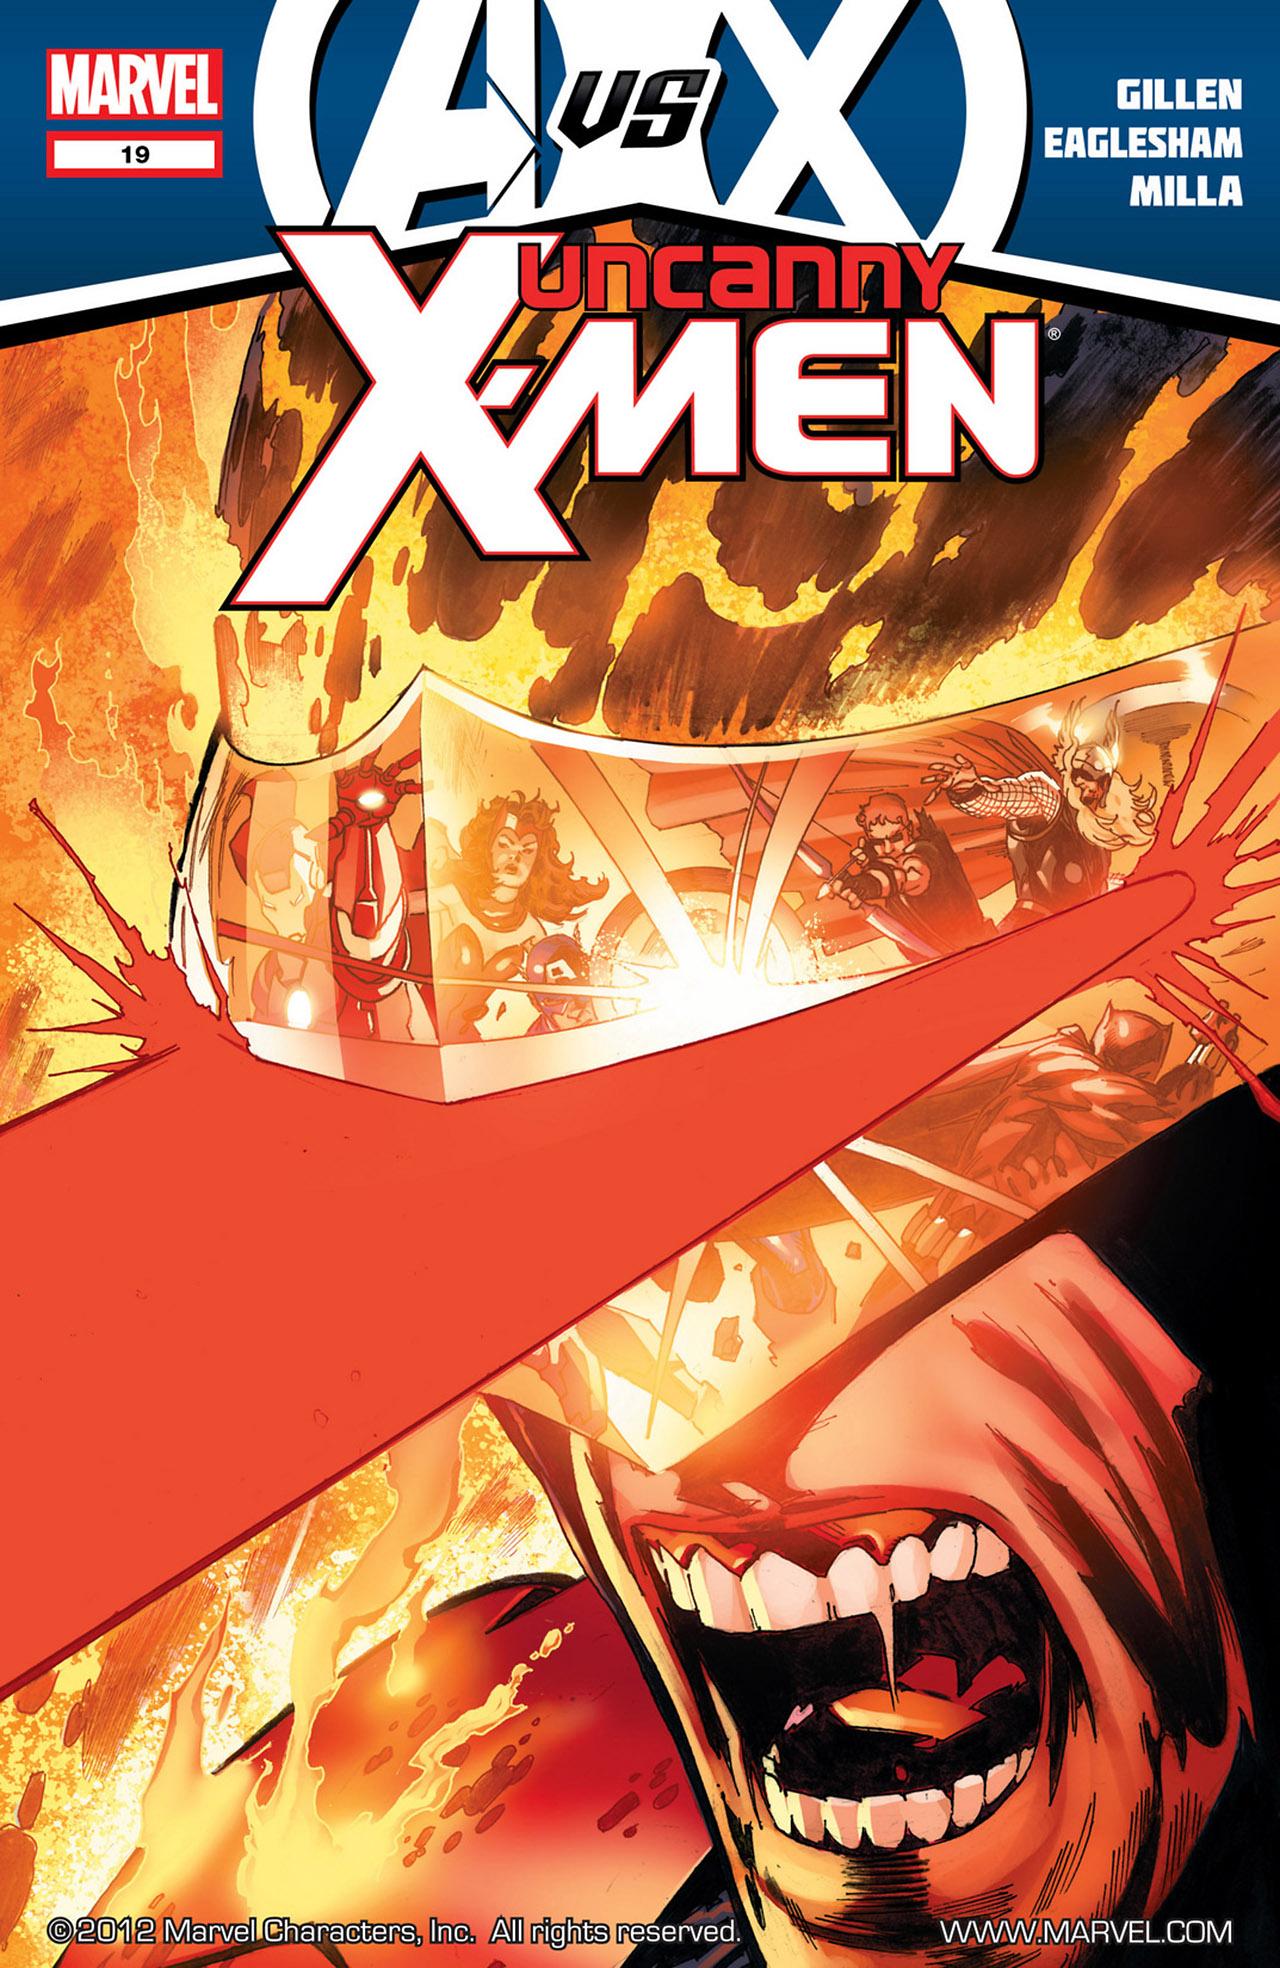 Uncanny X-Men Vol. 2 #19